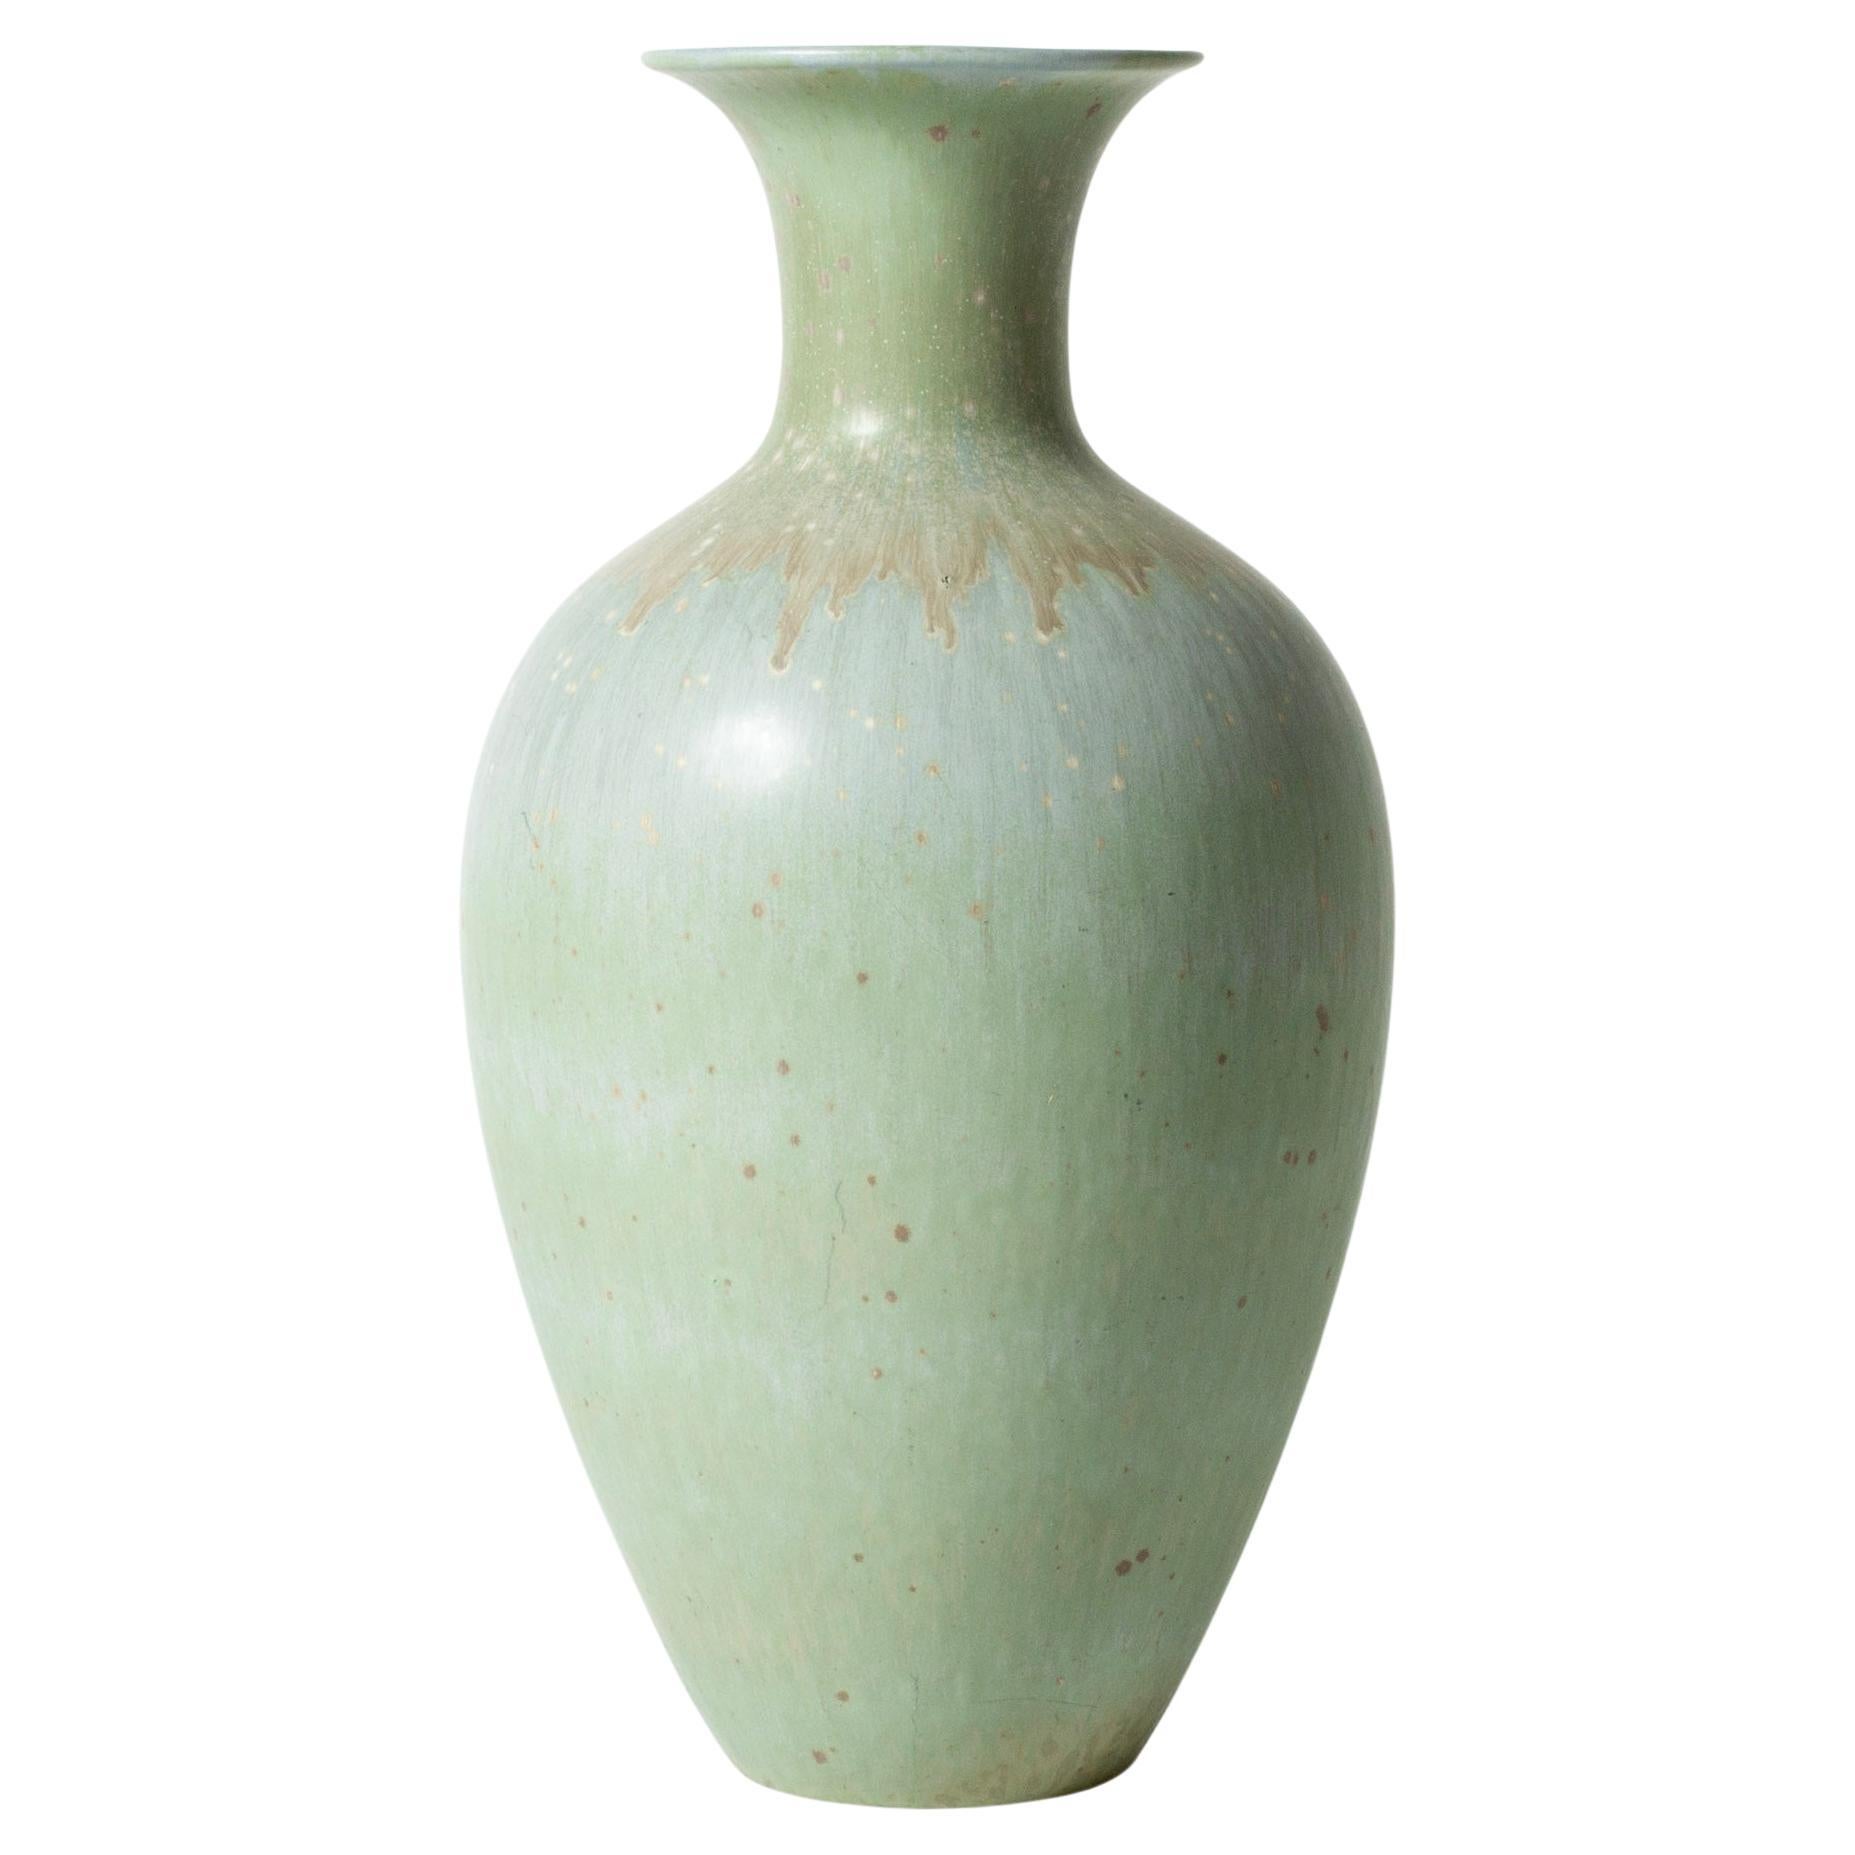 Vintage Midcentury Stoneware Floor Vase by Gunnar Nylund, Sweden, 1940s